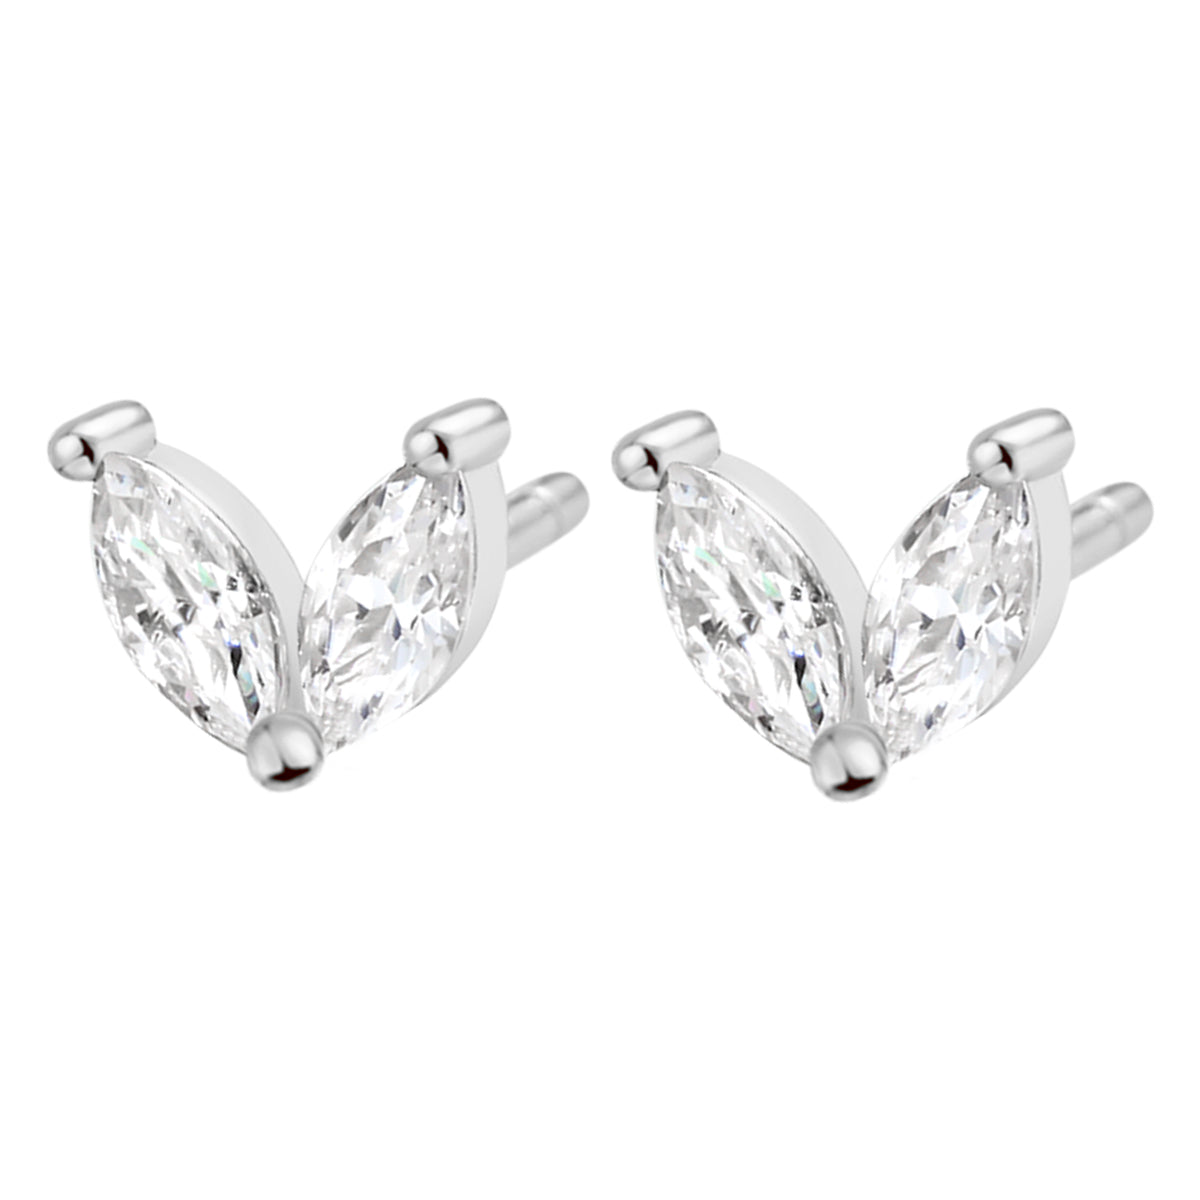 Gemstone Firefly Stud Earrings Sterling Silver